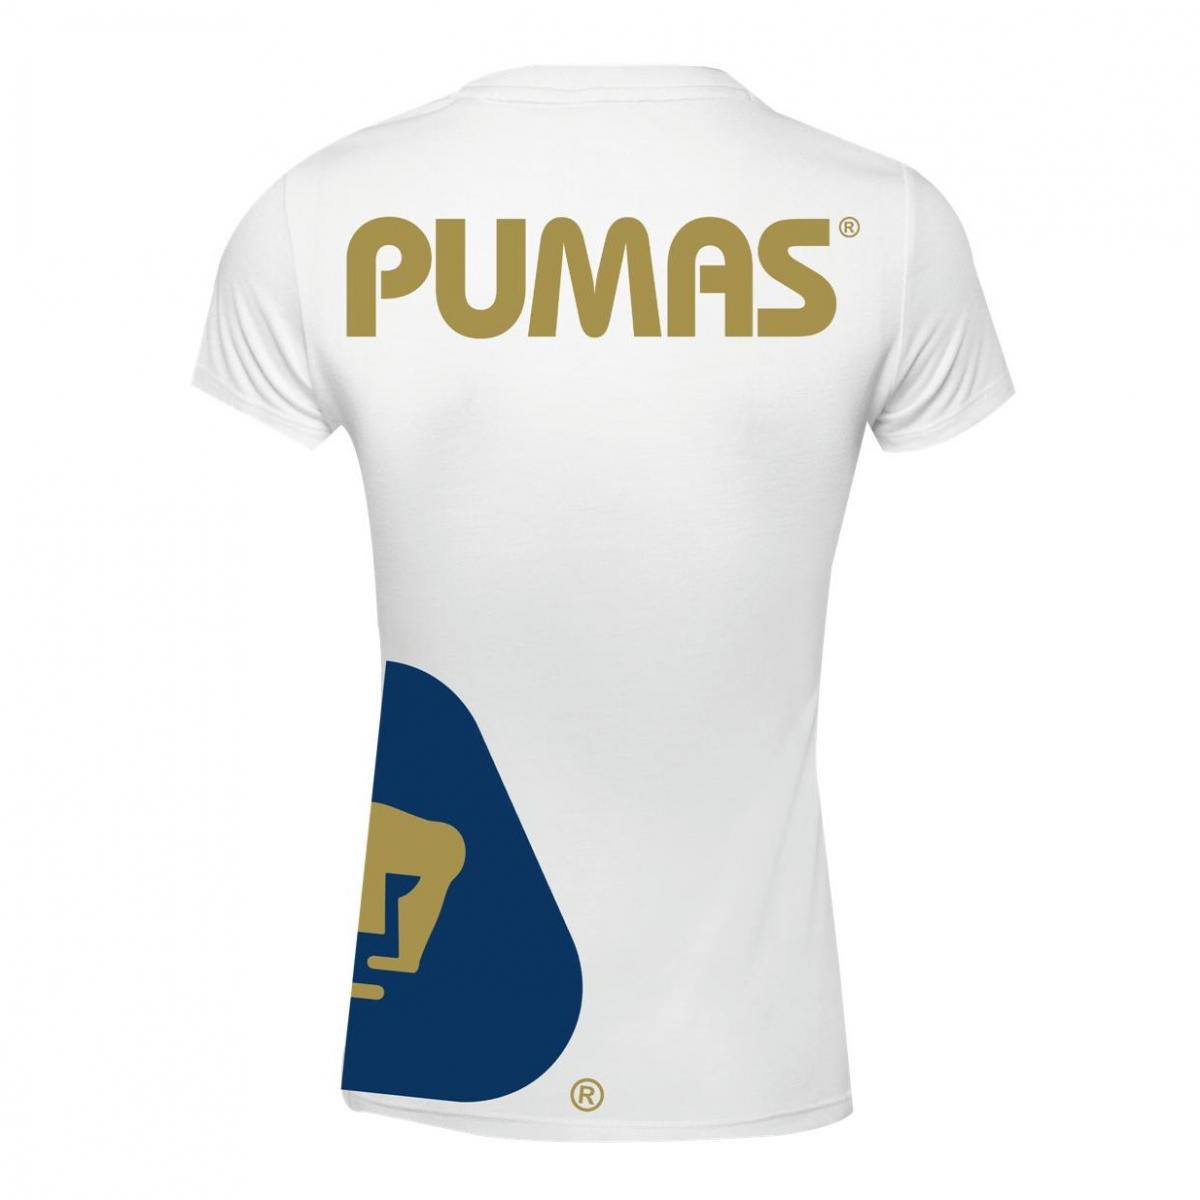 Playera Pumas Mujer Logo Lateral OD76885